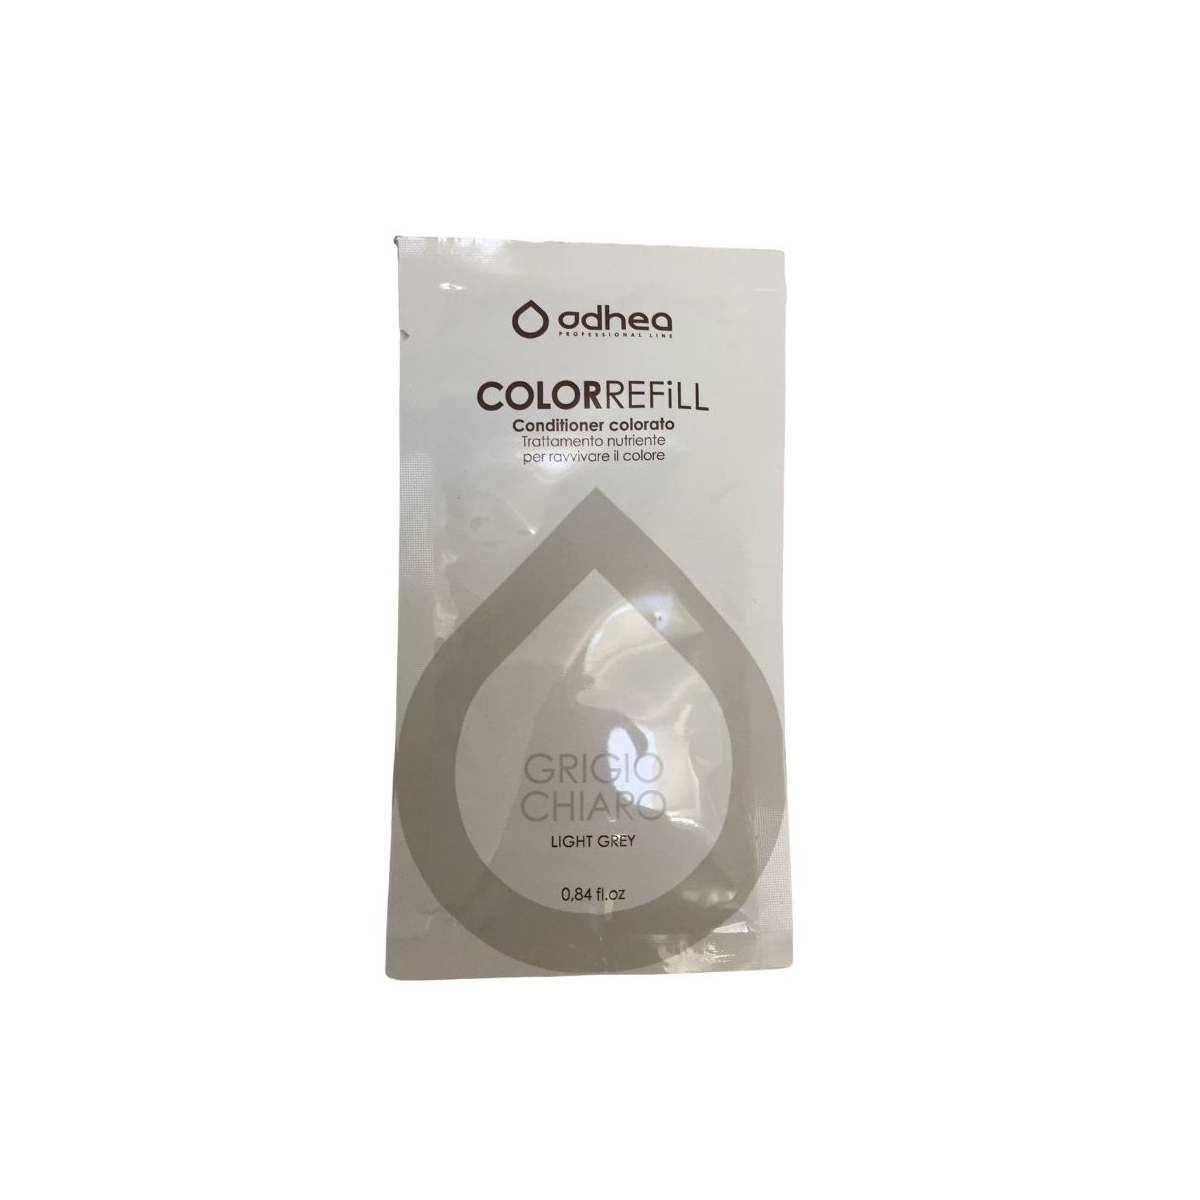 ODHEA - COLOR REFILL GRIGIO CHIARO (25ml) Conditioner colorato